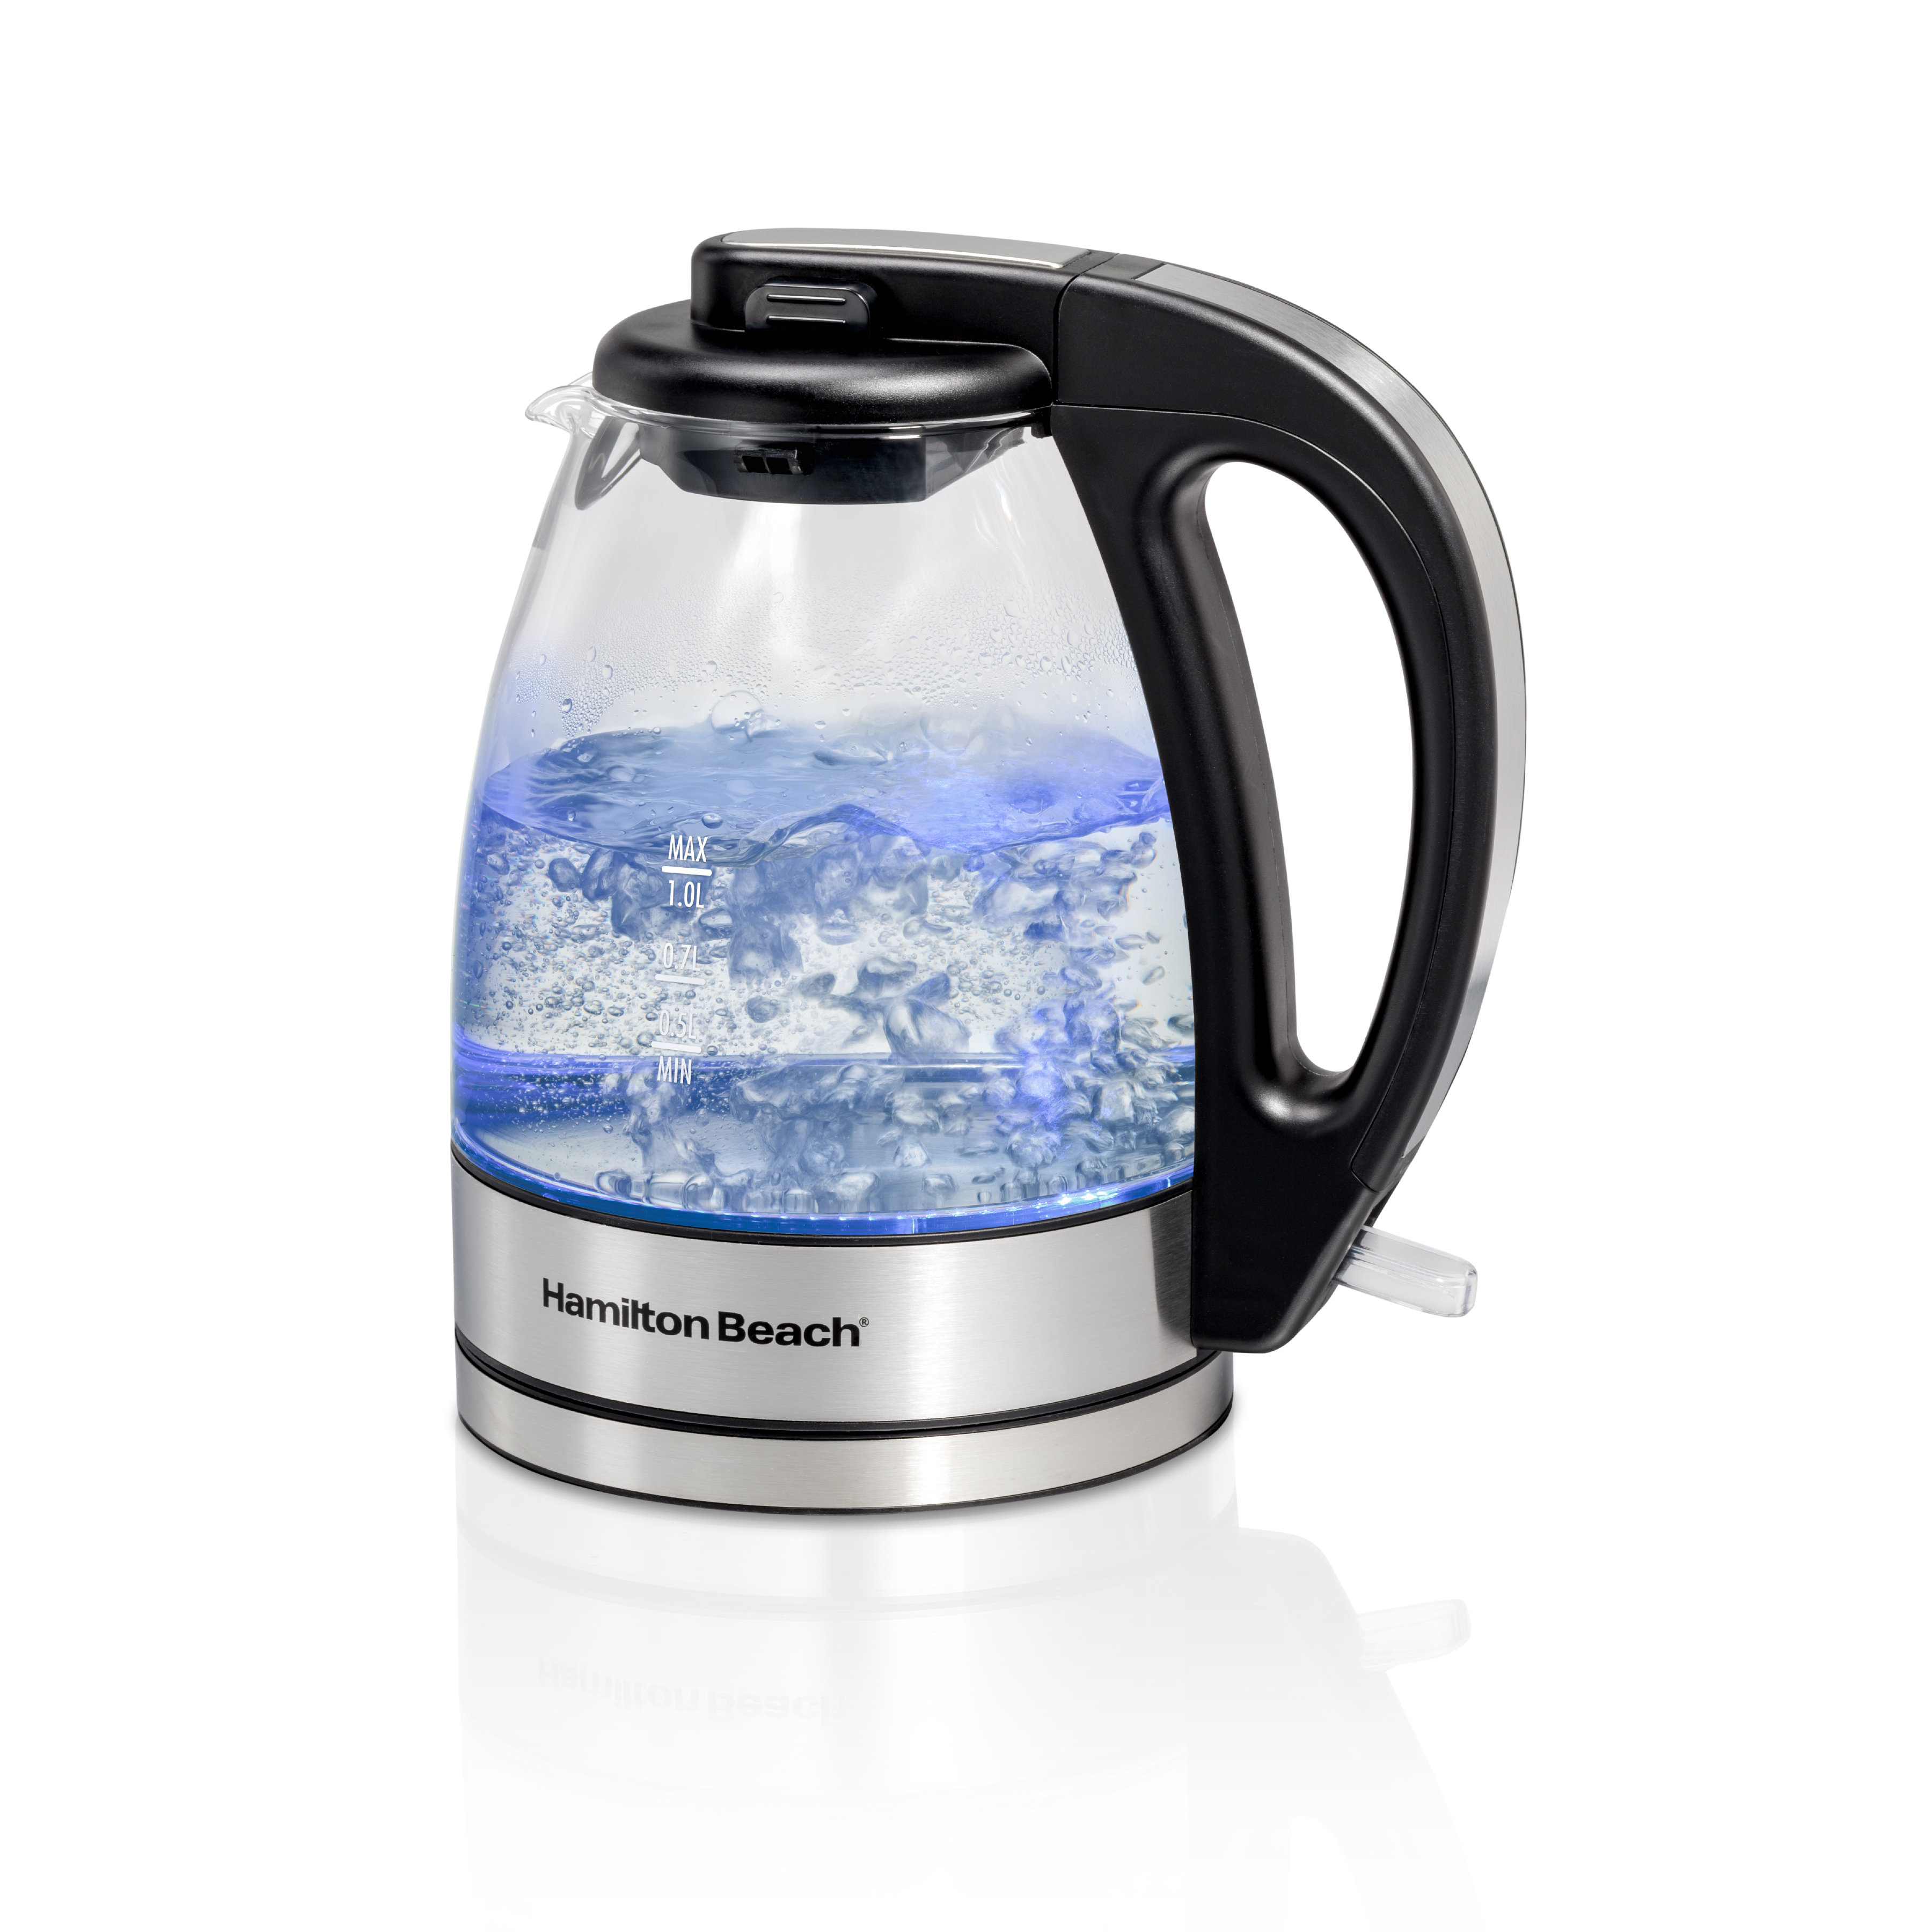 https://assets.wfcdn.com/im/44549964/compr-r85/2612/261273250/hamilton-beach-compact-1-liter-glass-kettle.jpg